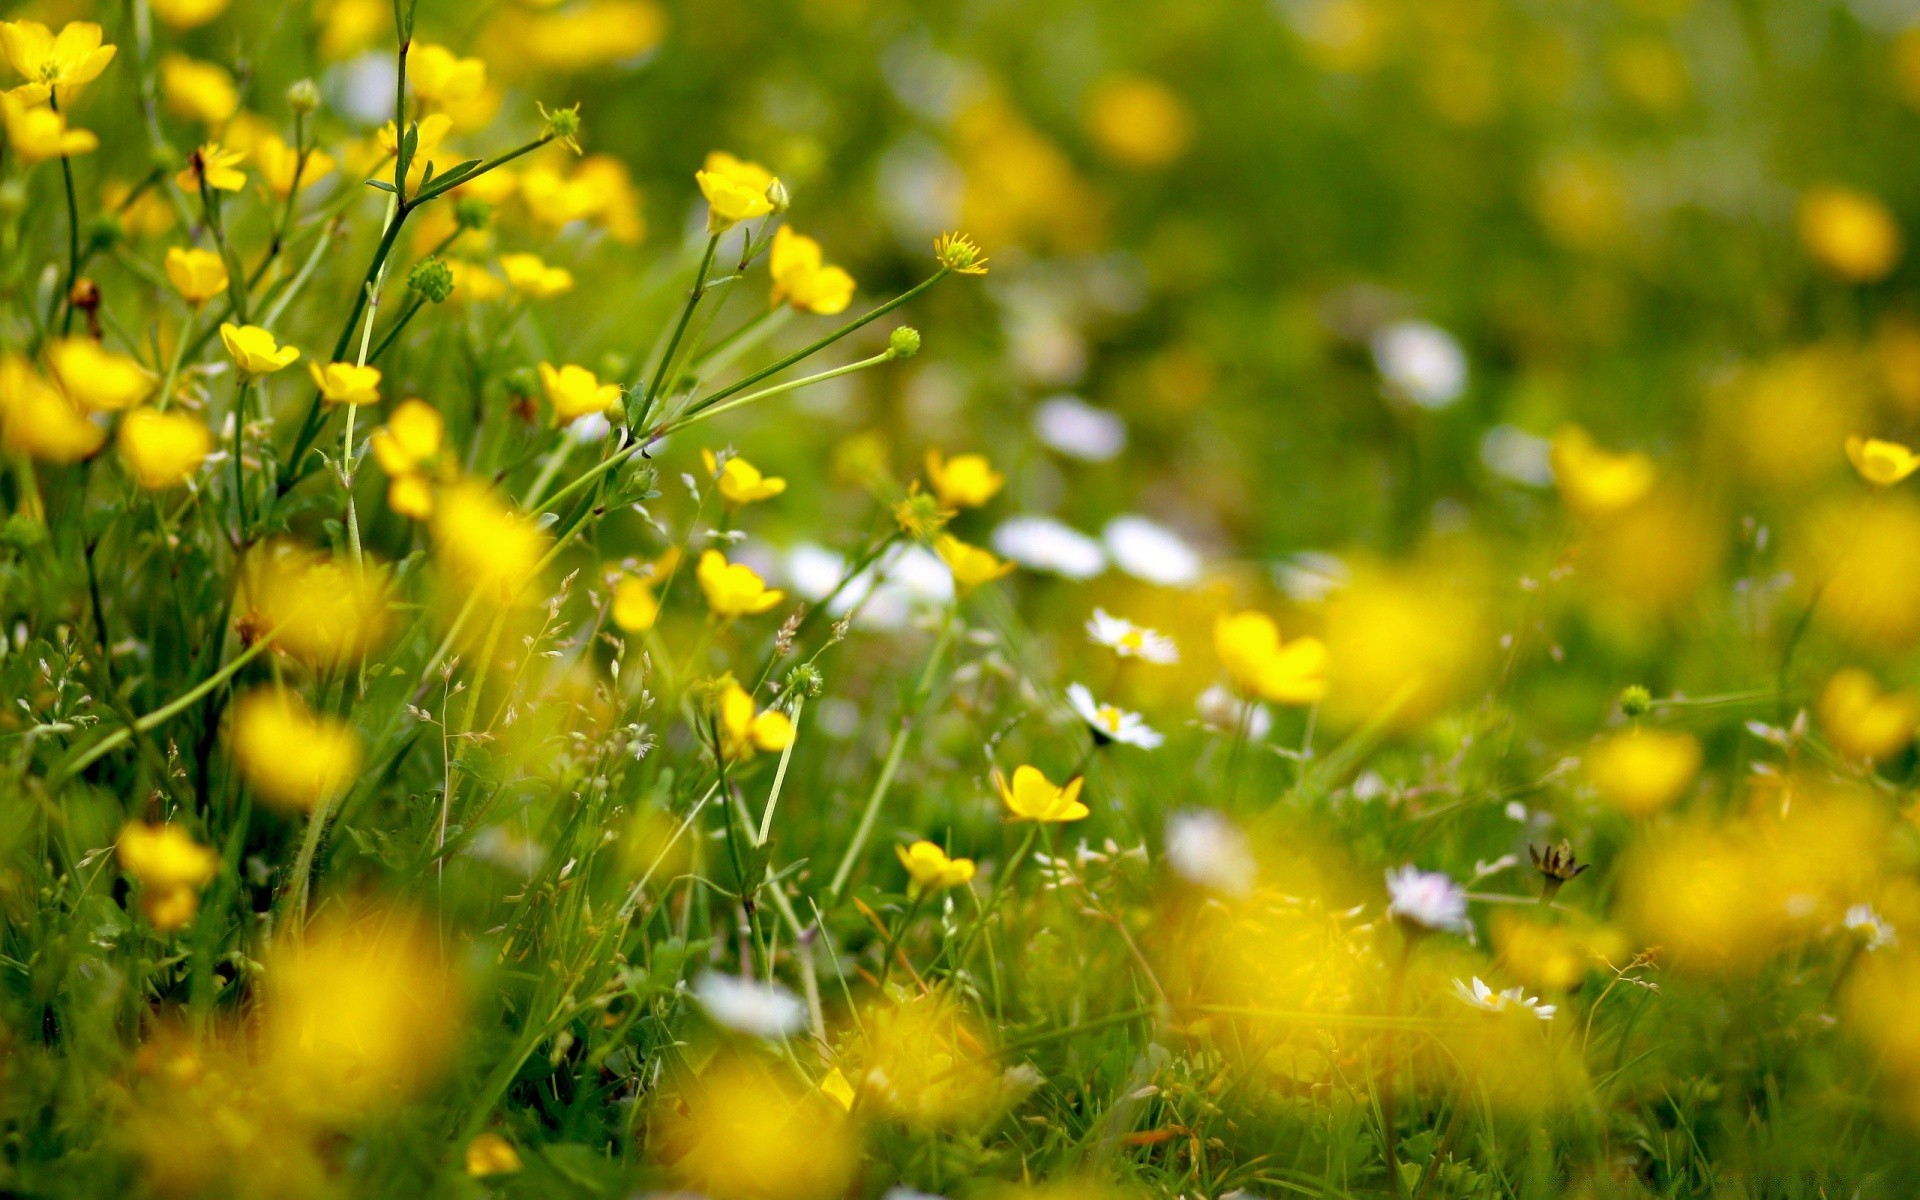 цветы трава поле сенокос природа цветок лето флора яркий сельских хорошую погоду сад сезон солнце газон на открытом воздухе цвет рост лист среды